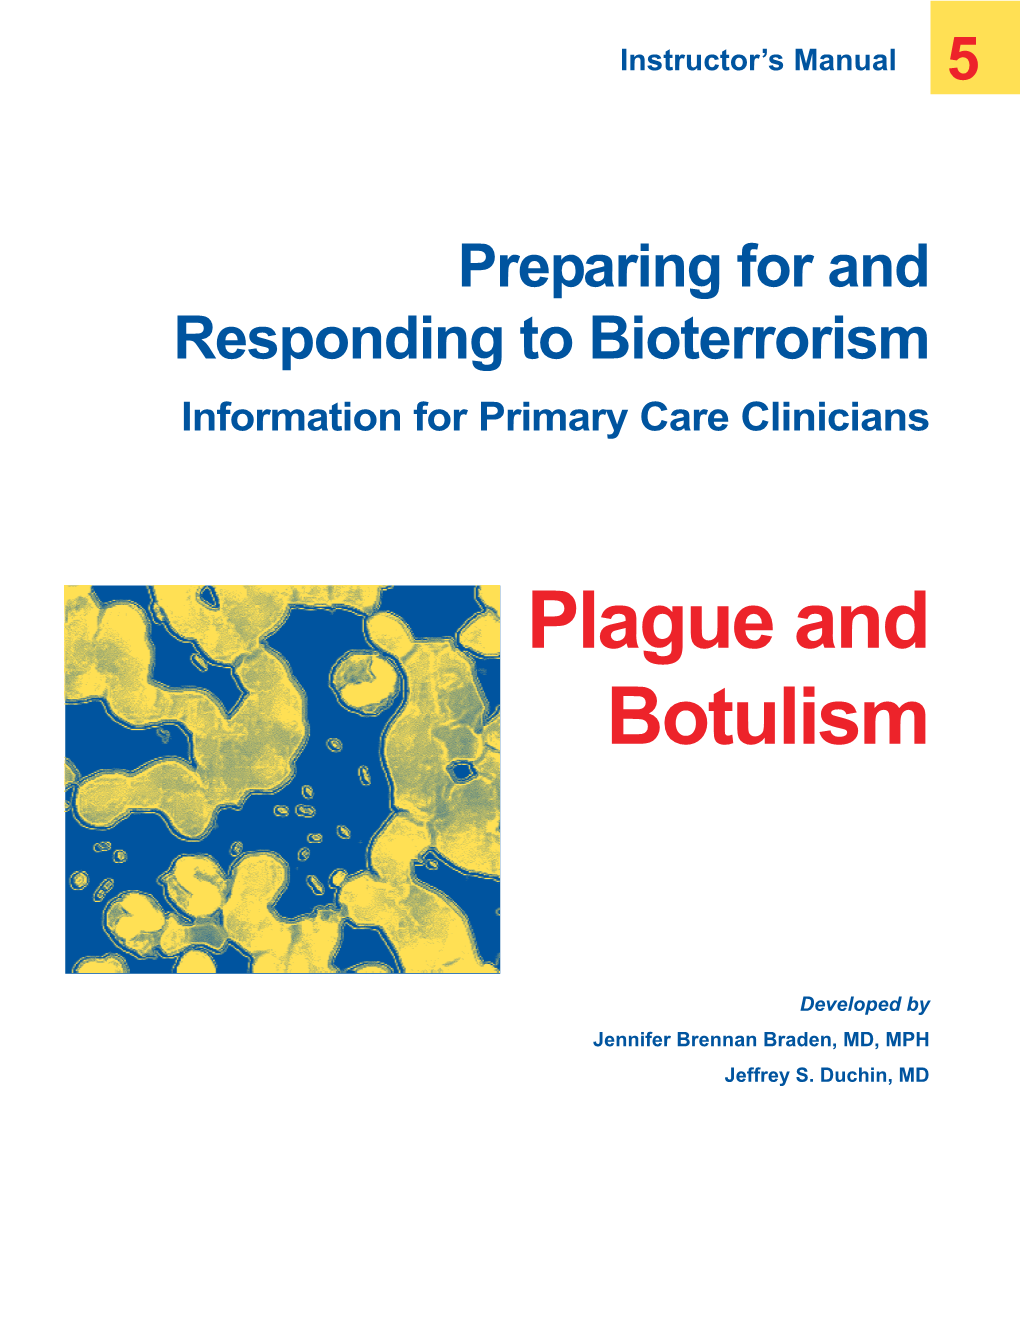 Plague and Botulism